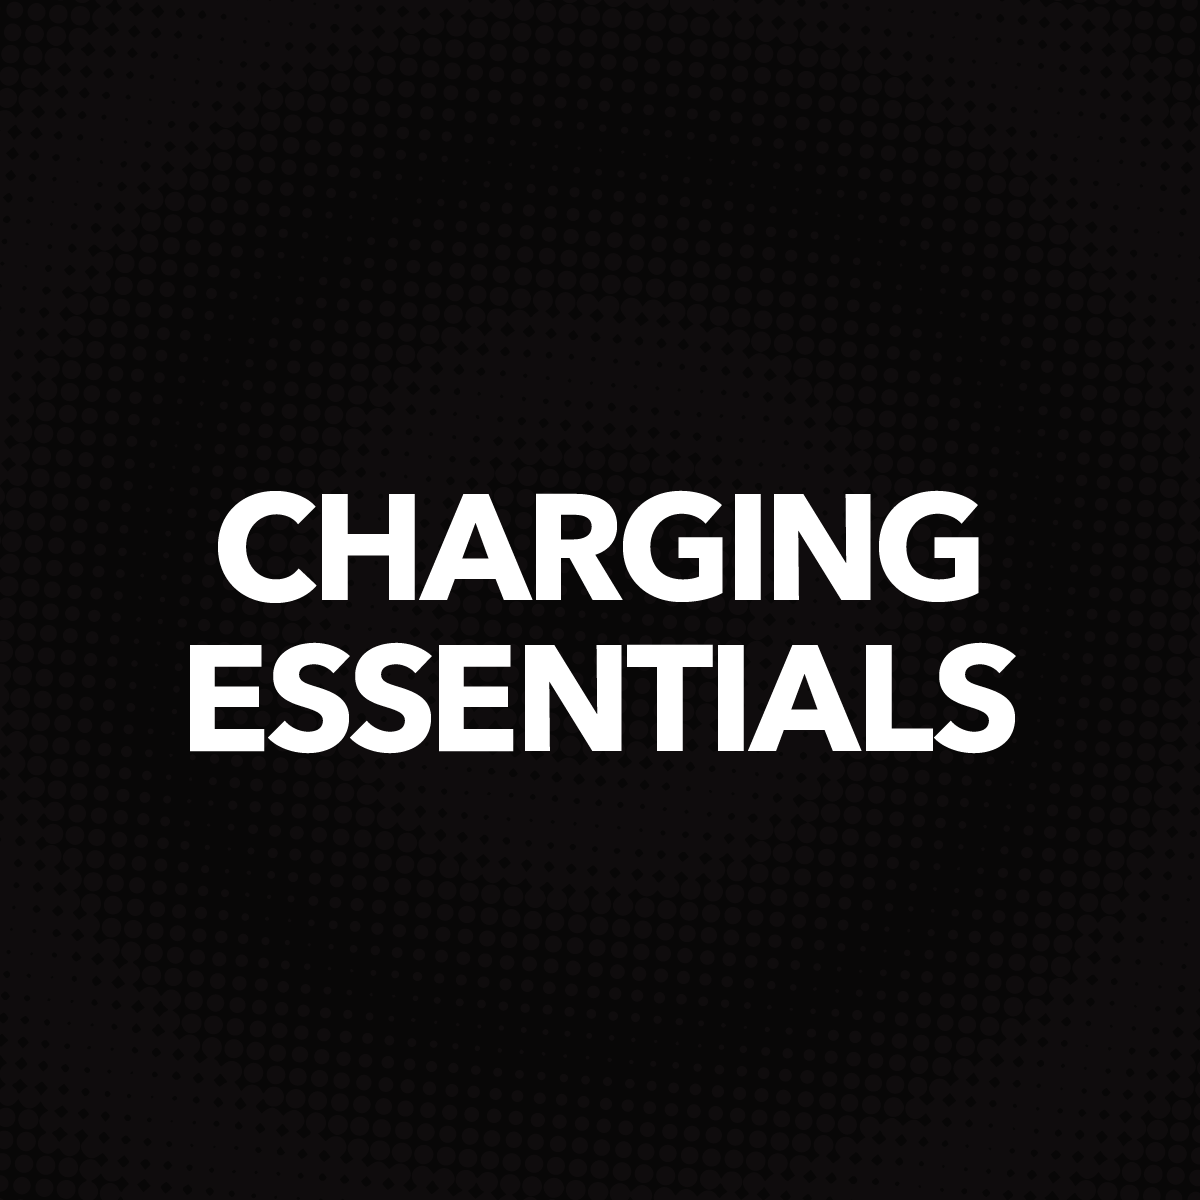 Charging Essentials text